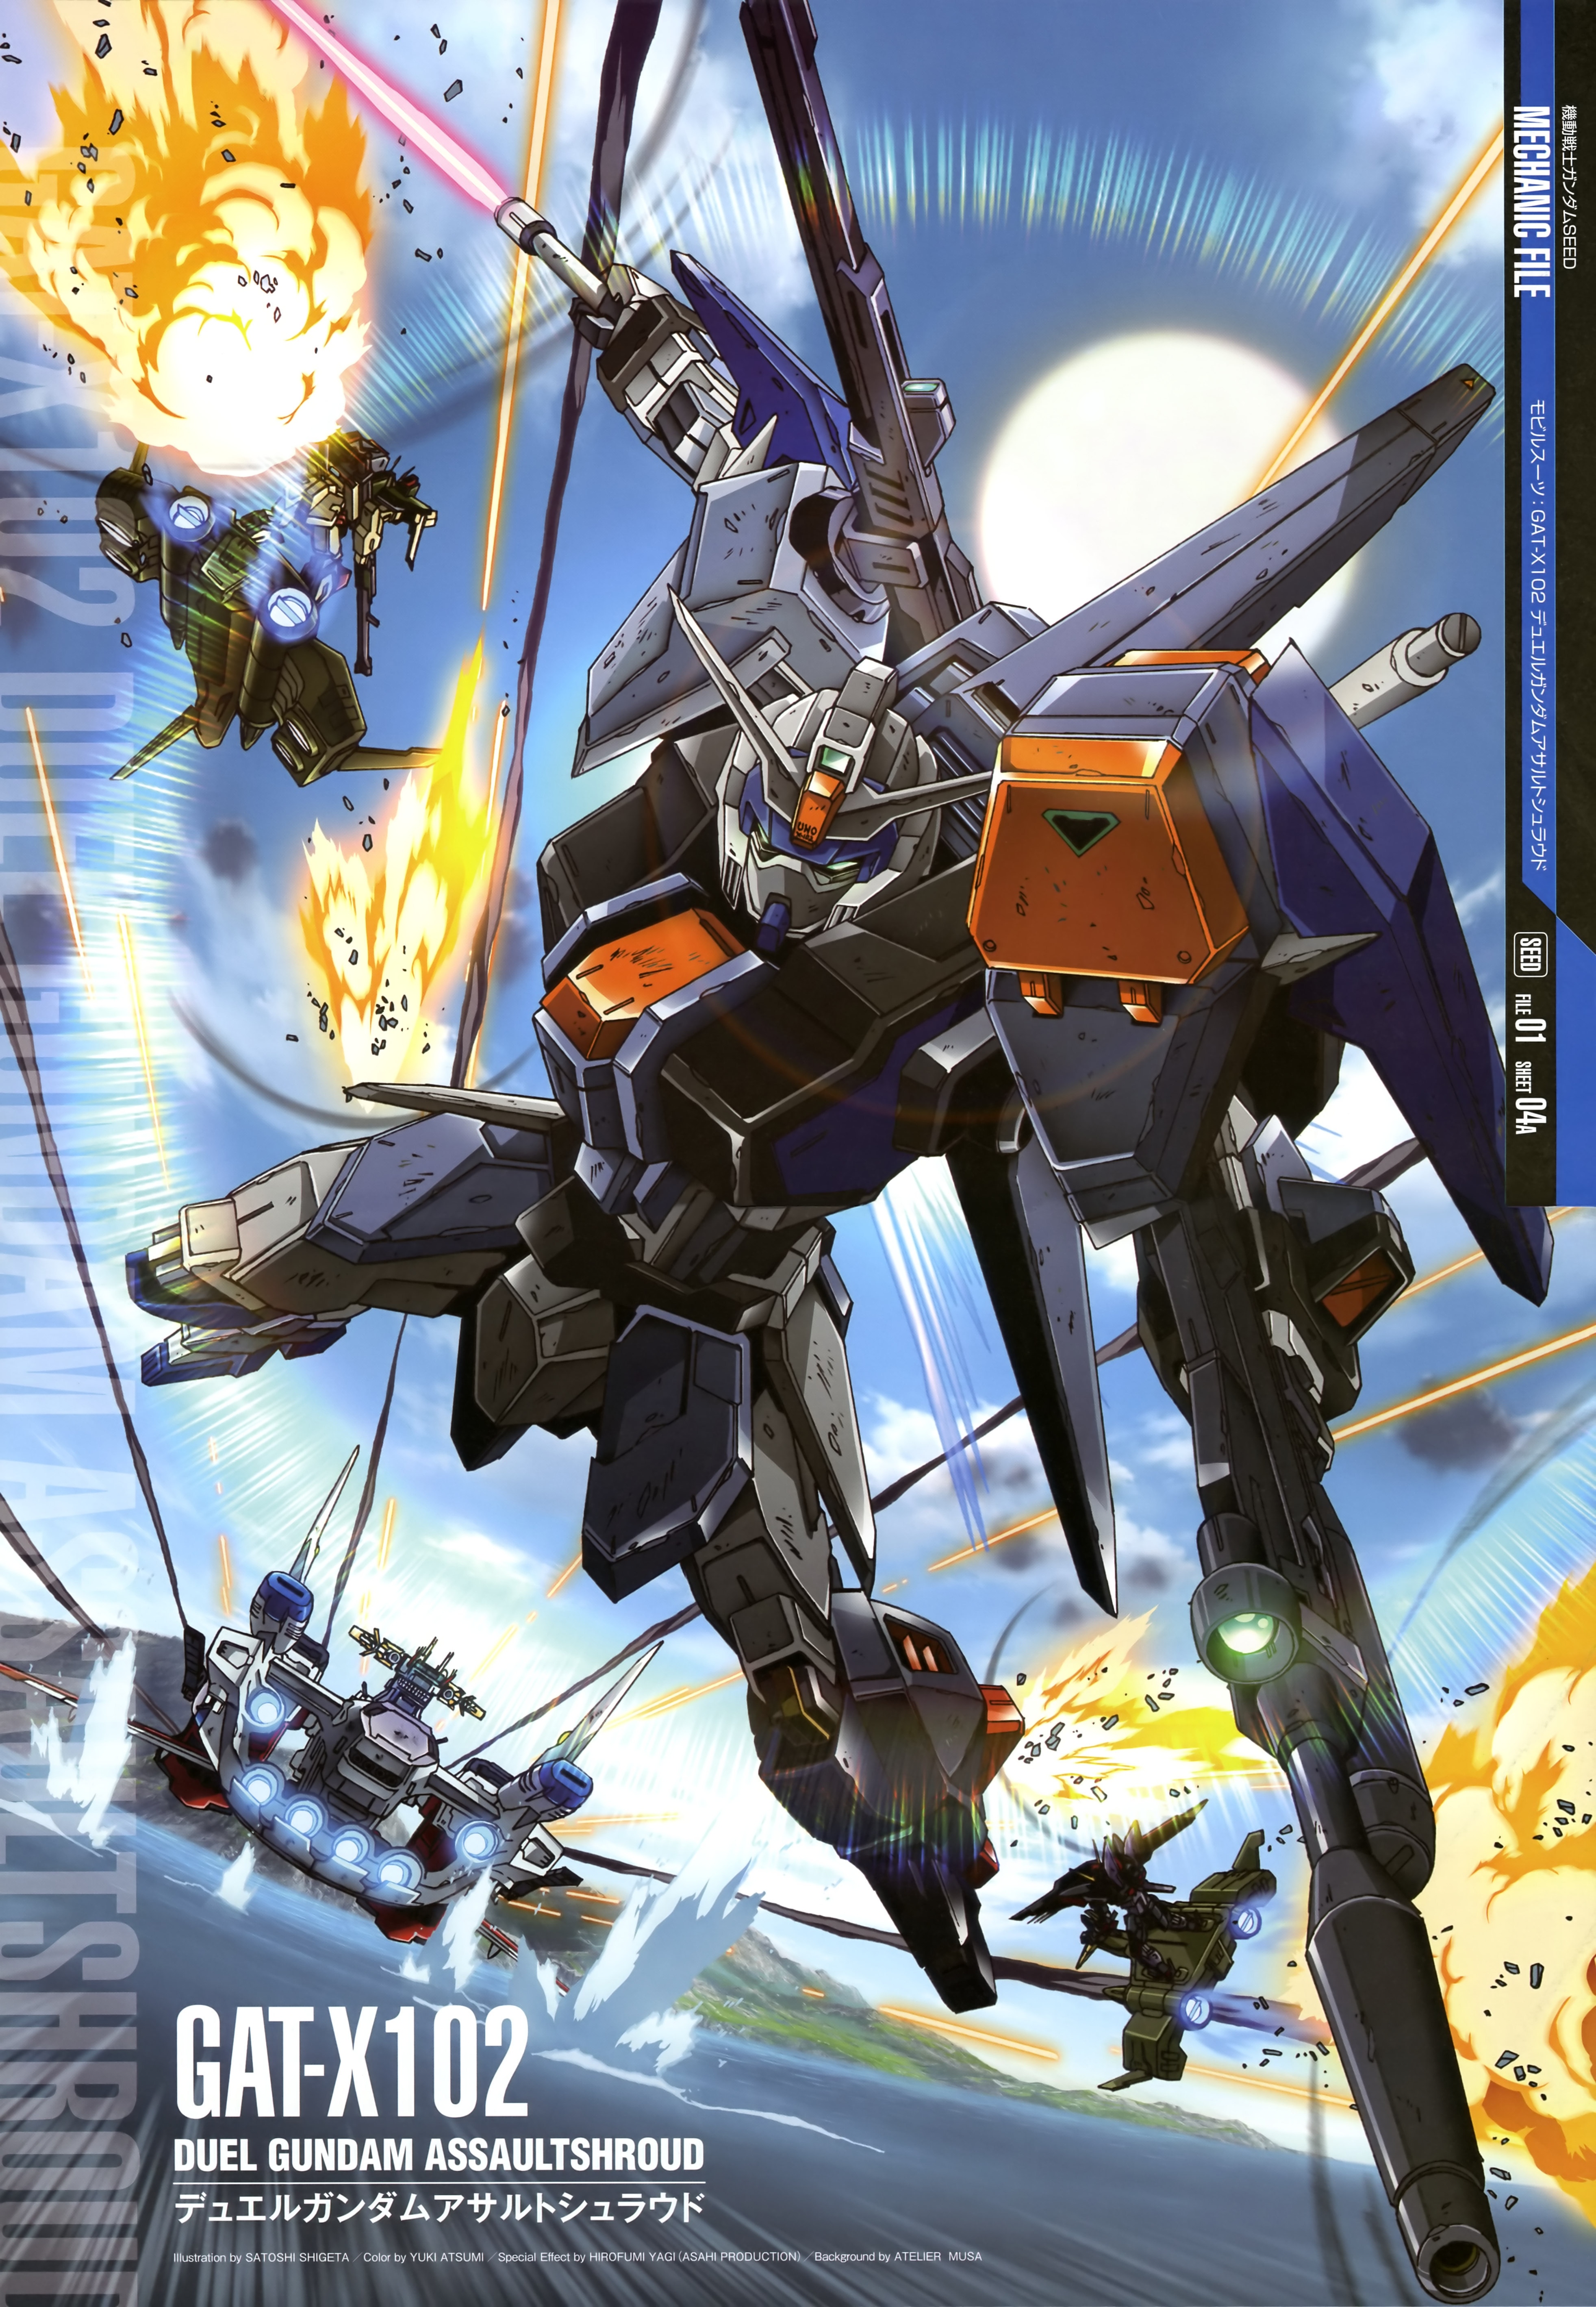 Anime 3927x5675 Buster Gundam anime mechs Mobile Suit Gundam SEED Super Robot Taisen artwork digital art Duel Gundam